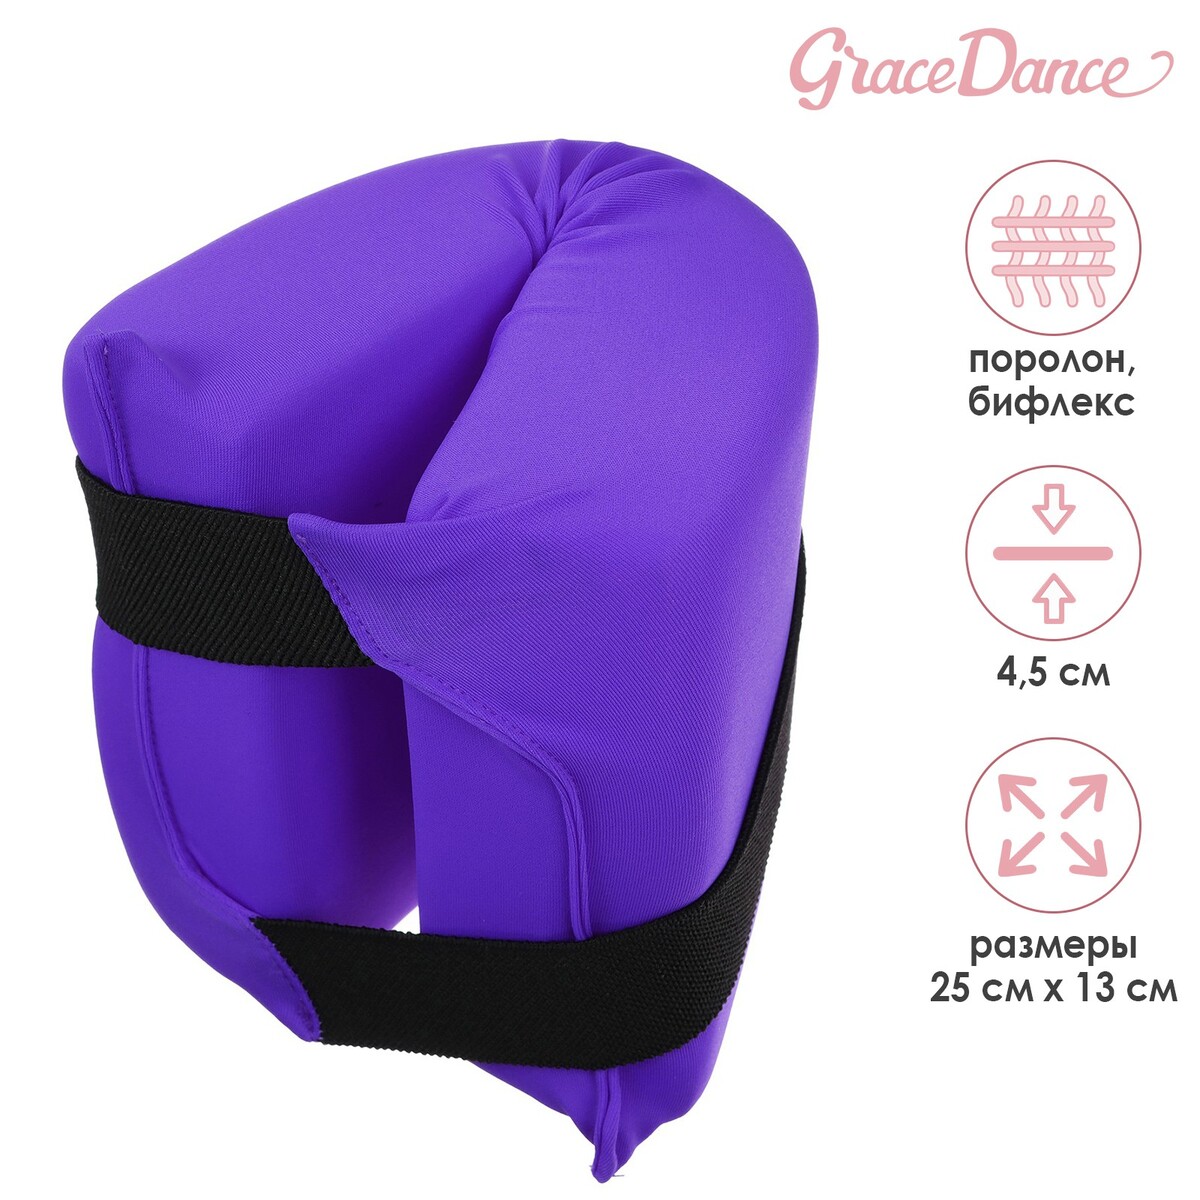 Подушка для растяжки grace dance, цвет фиолетовый подушка балансировочная массажная d 35 см фиолетовый